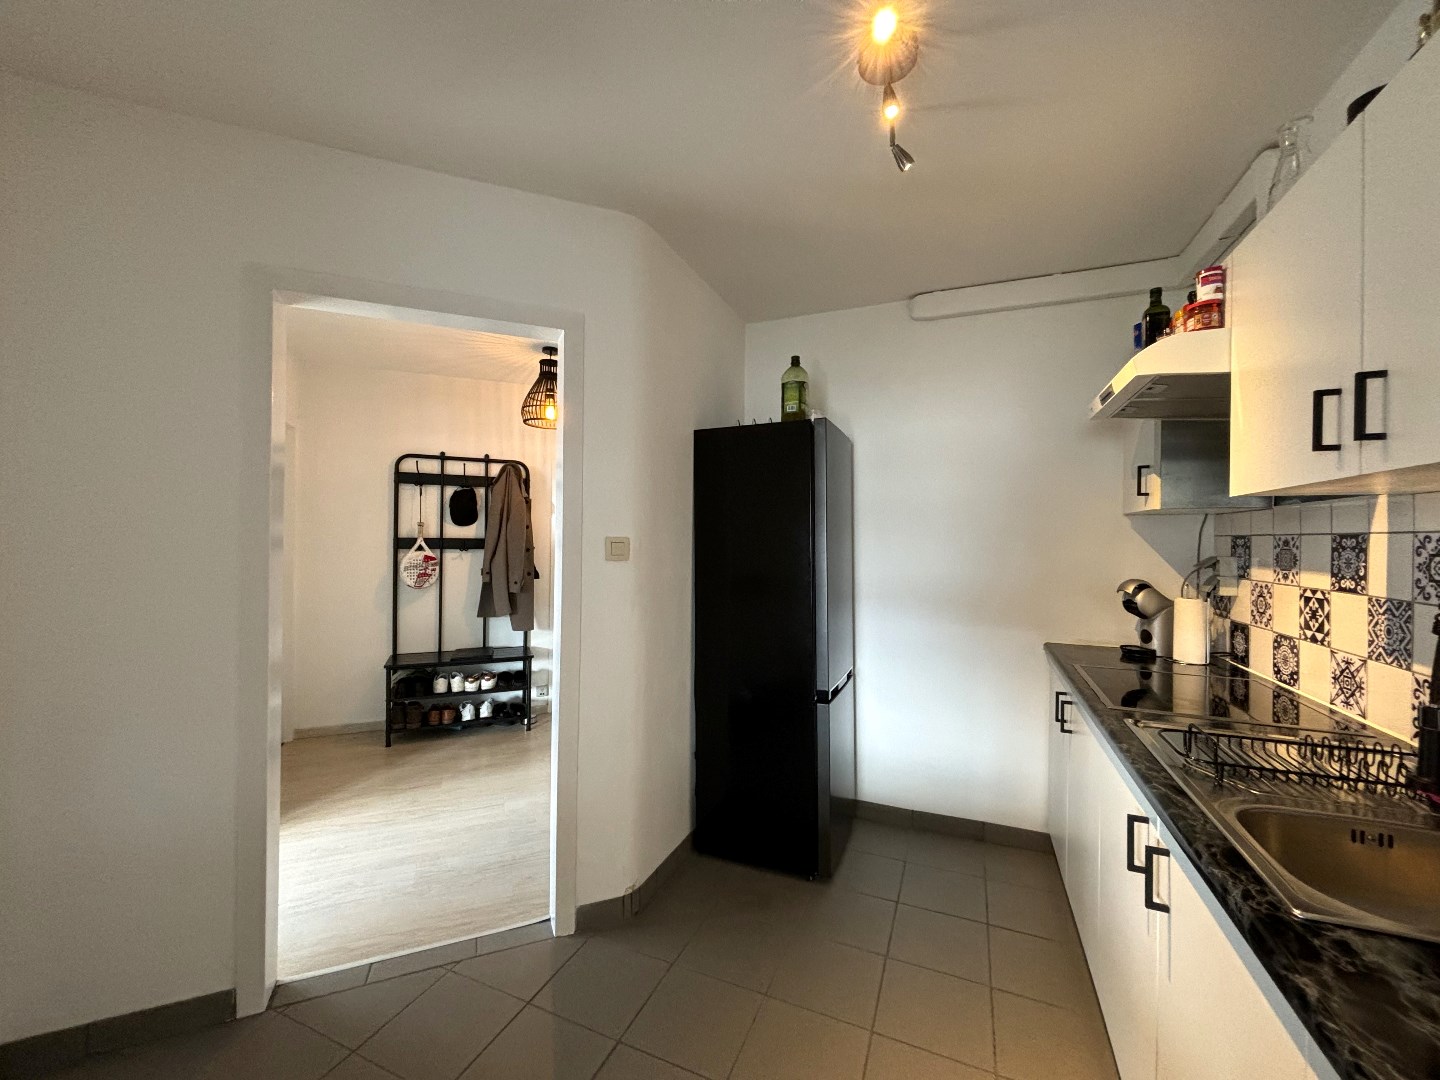 Appartement met 2 ruime slaapkamers in centrum Leopoldsburg 